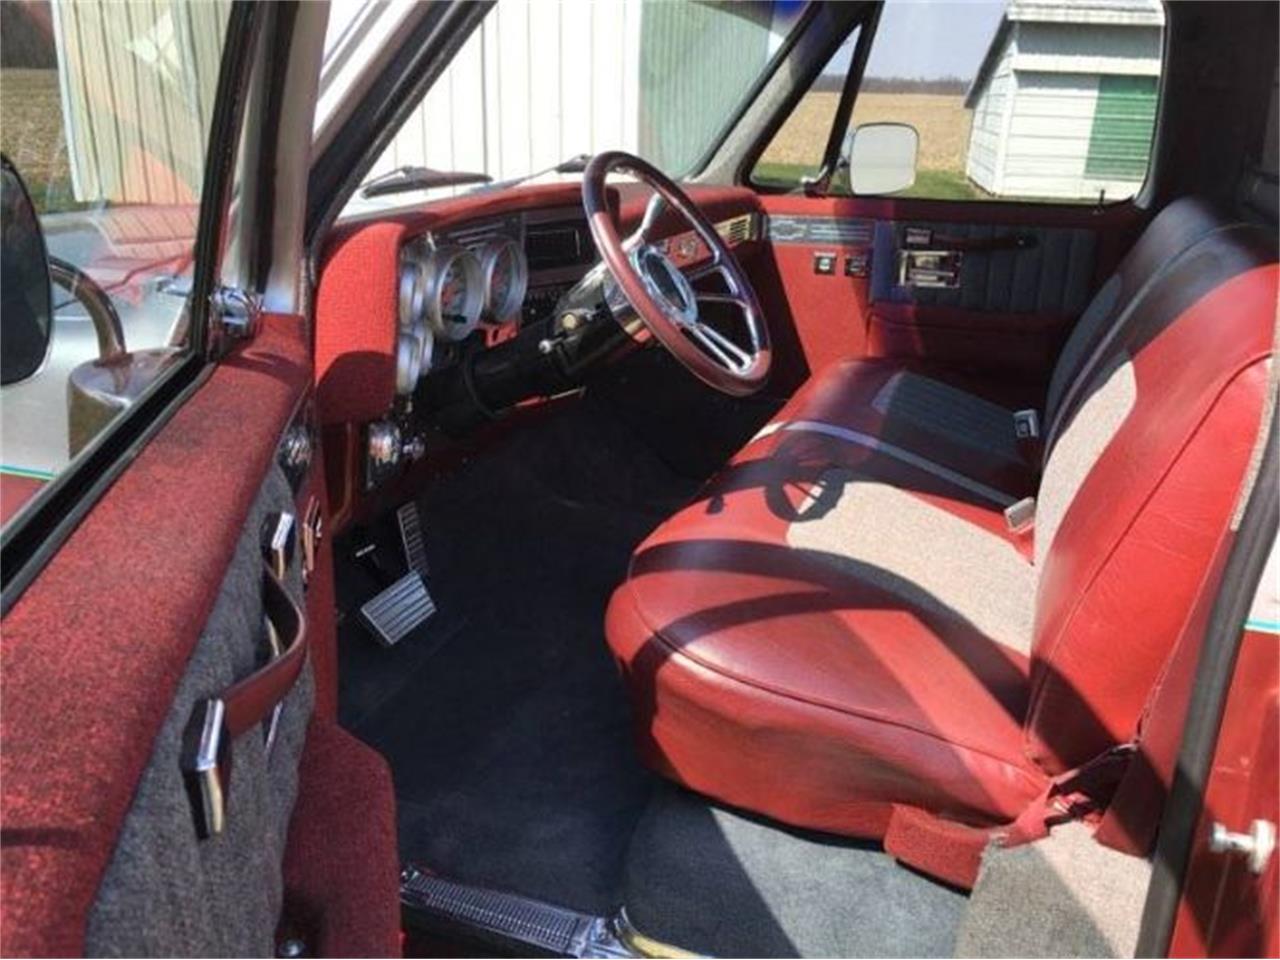 1984 chevy truck interior